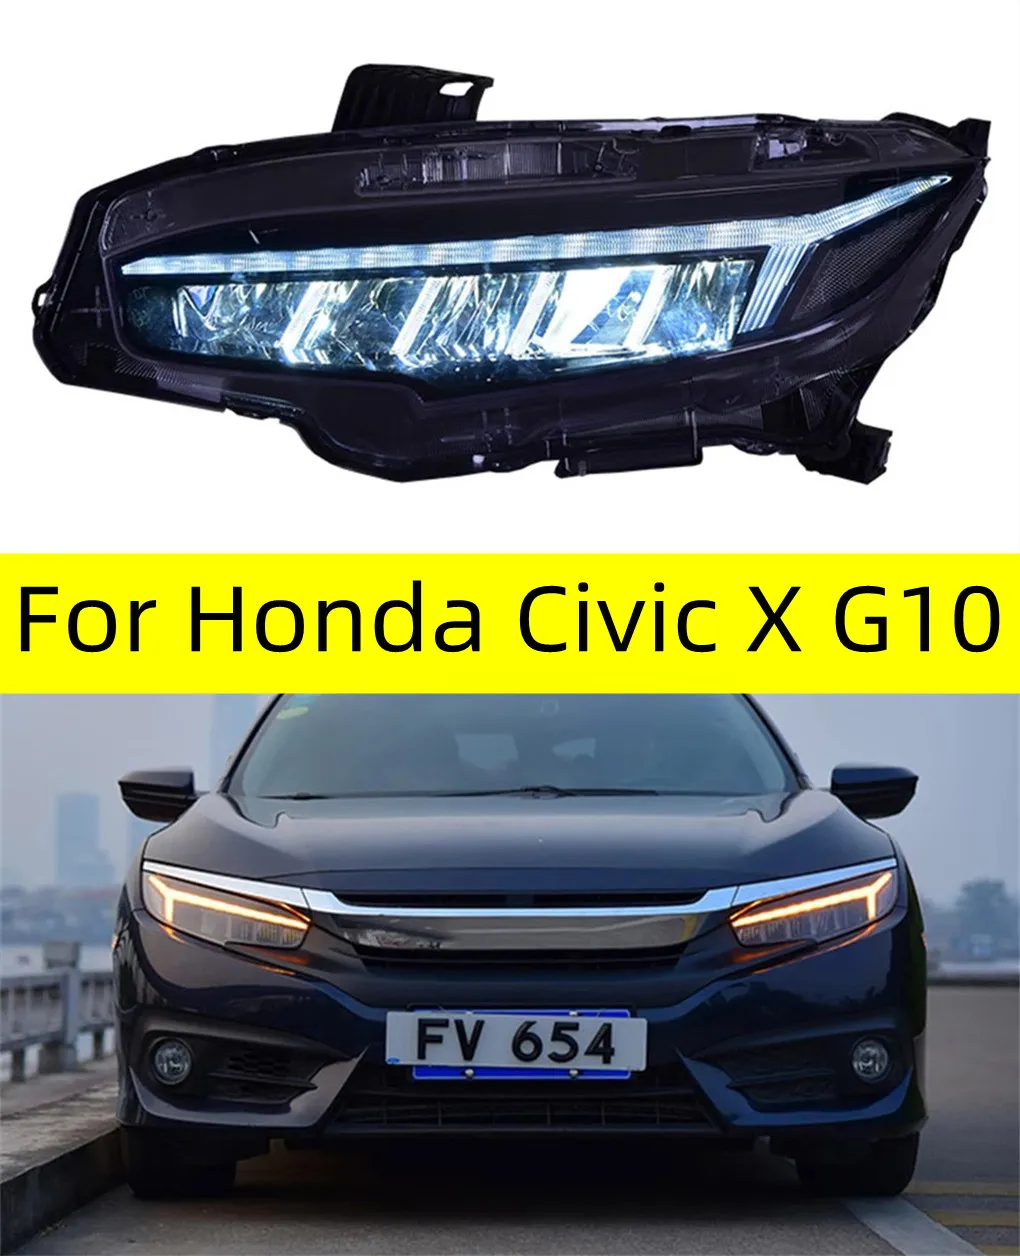 2 szt. Auto -głowica samochodu Części do Honda Civic X G10 Zmodyfikowane lampy LED reflektory DRL Dual Projector Lift